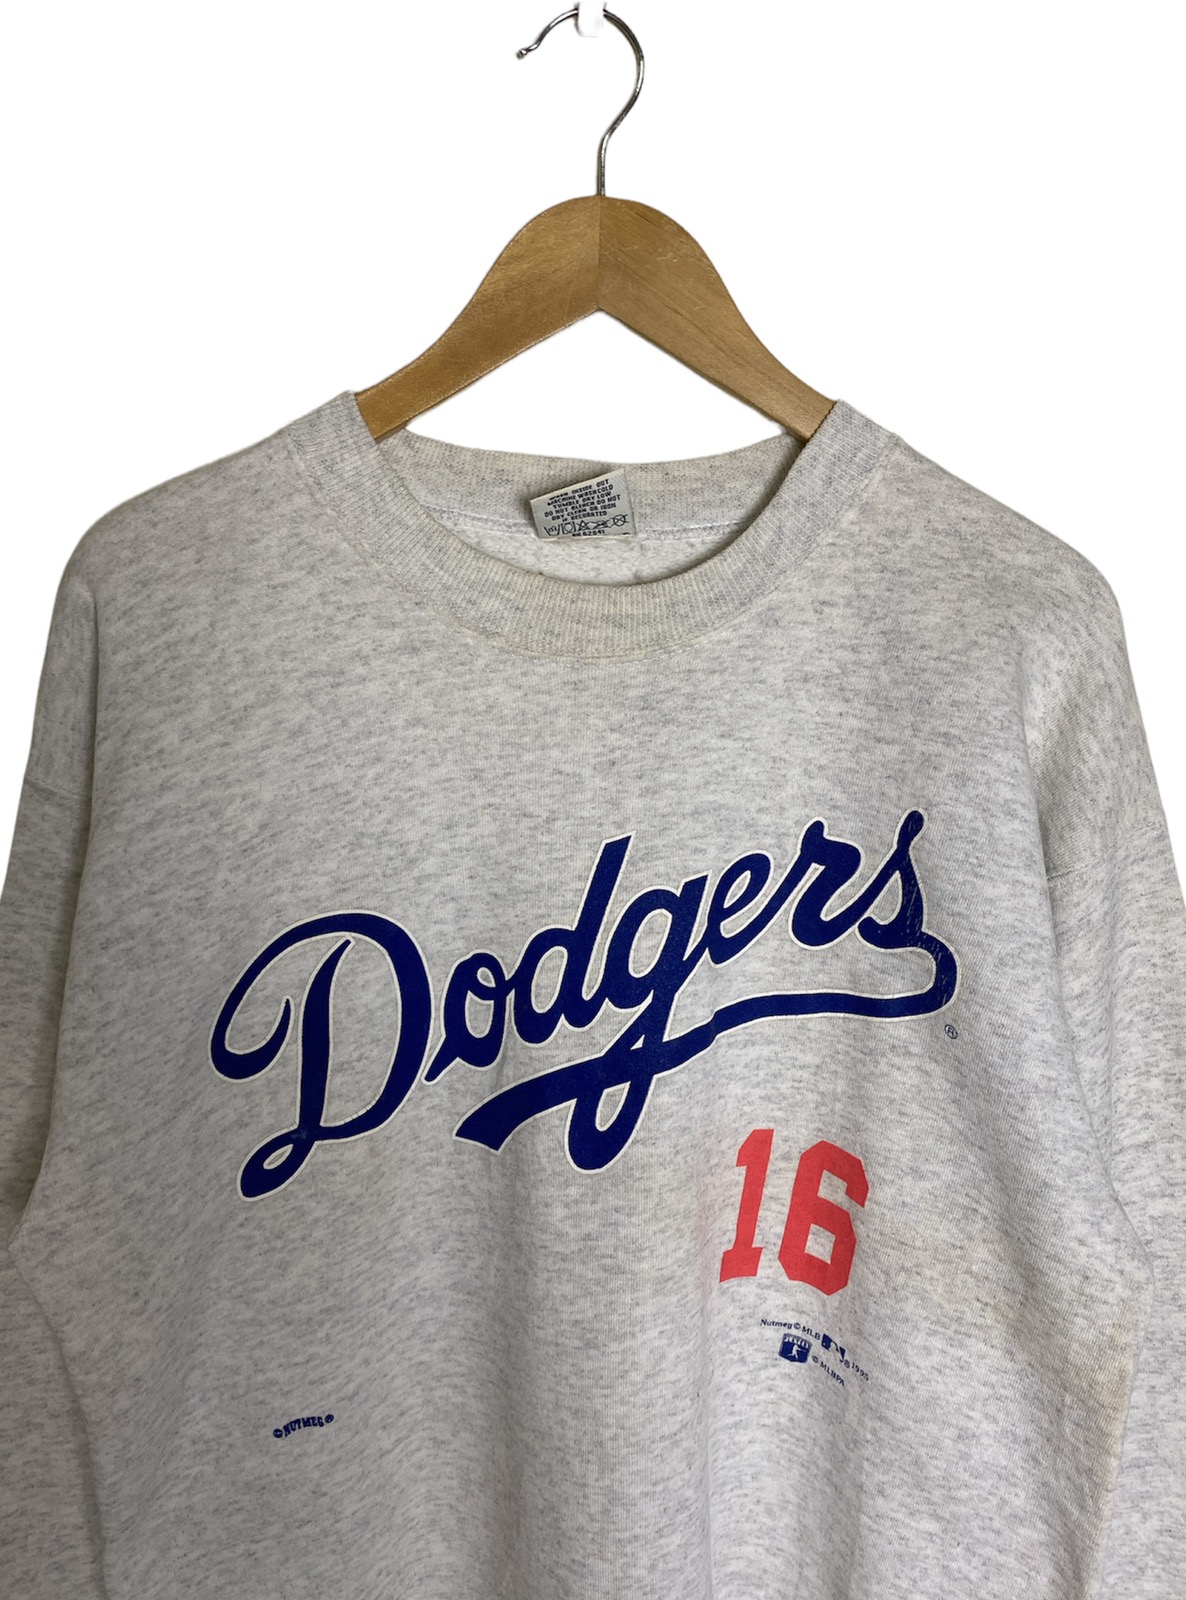 Vintage 1995 LA Dodgers 16 Nomo Sweatshirt Crewneck Made in 